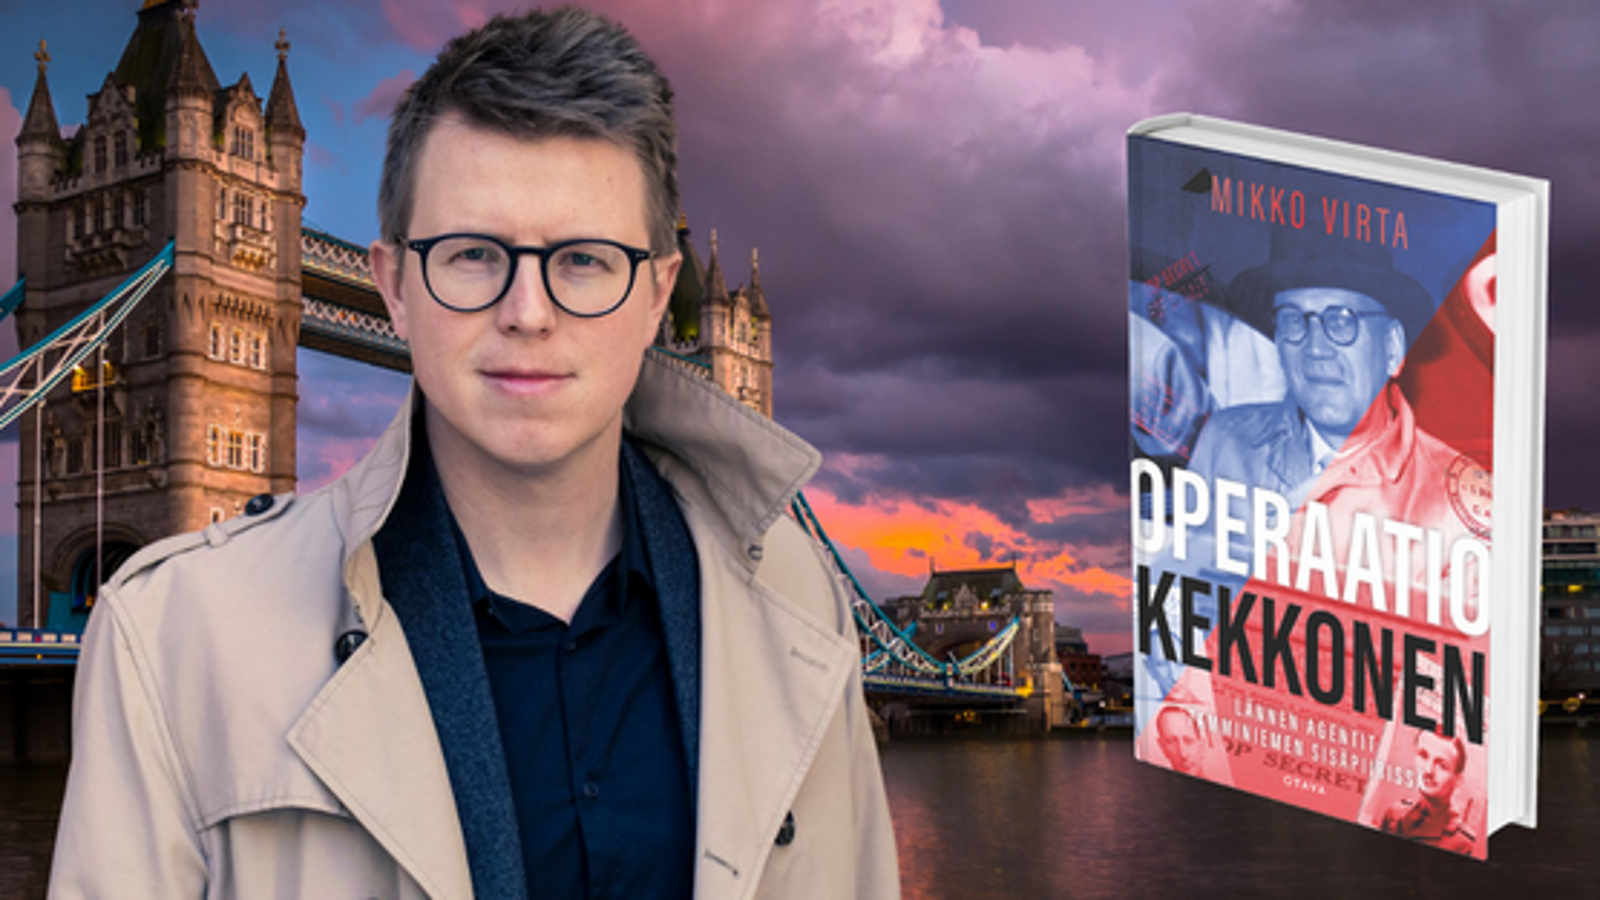 Kuvassa on Mikko Virta puolivartalokuvassa ja taustalla on London Bridge ja Tower.  Oikealla on kuva kirjasta, jonka kannessa on Urho Kekkosen kasvot.  Kirjan kannen sävy on siniharmaa.